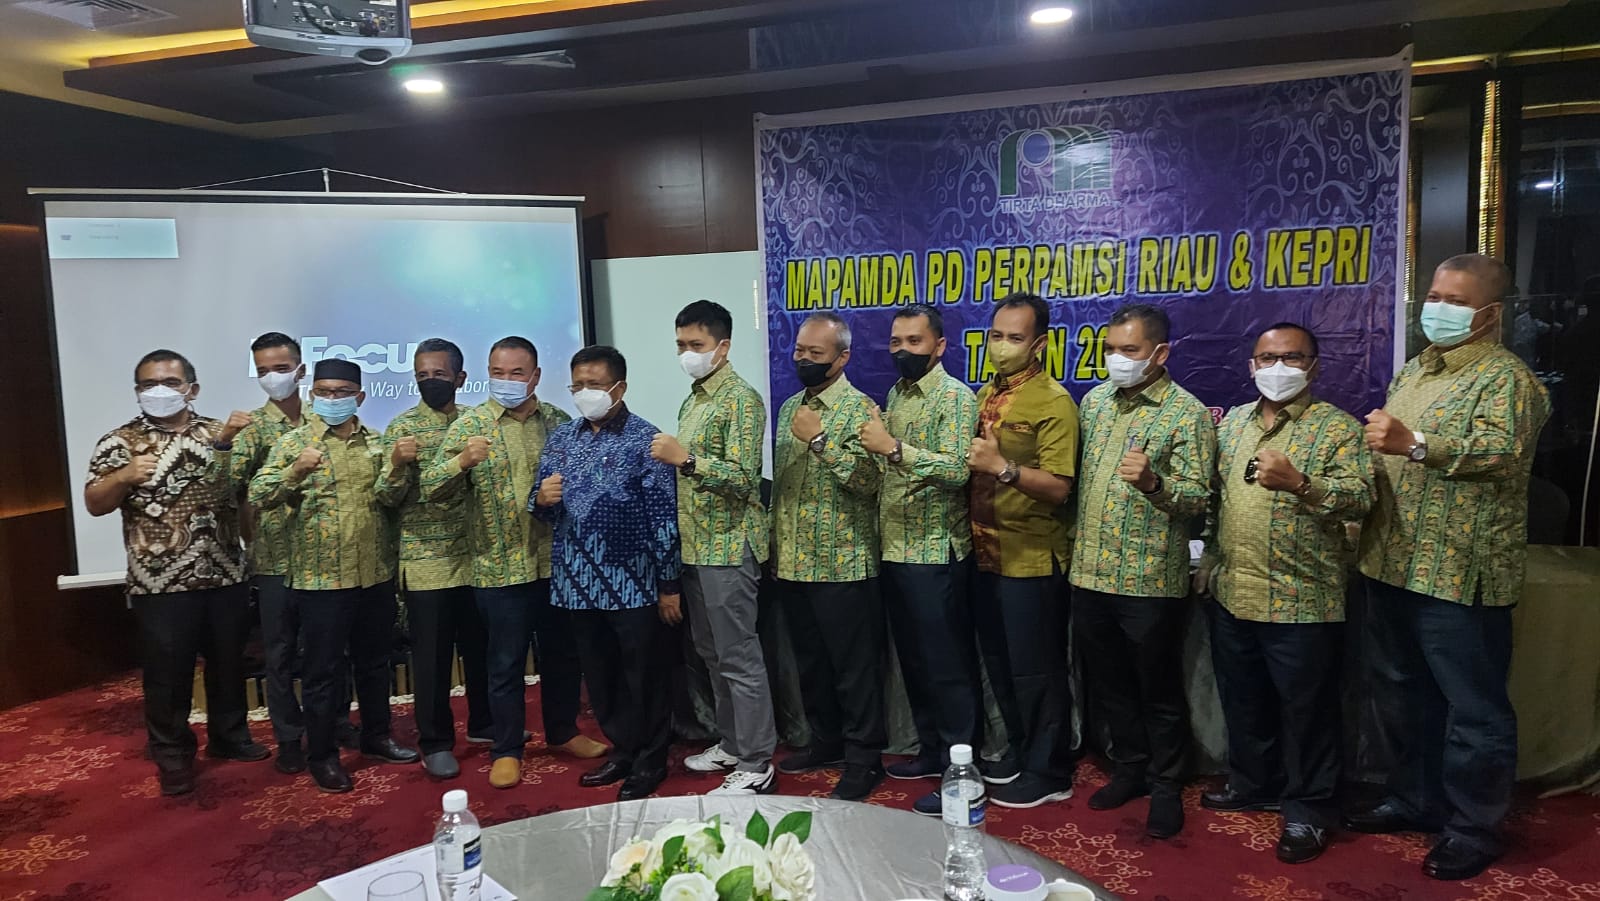 Dirut PDAM Tirta Indragiri Terpilih Sebagai Ketua Perpamsi Provinsi Riau dan Kepri